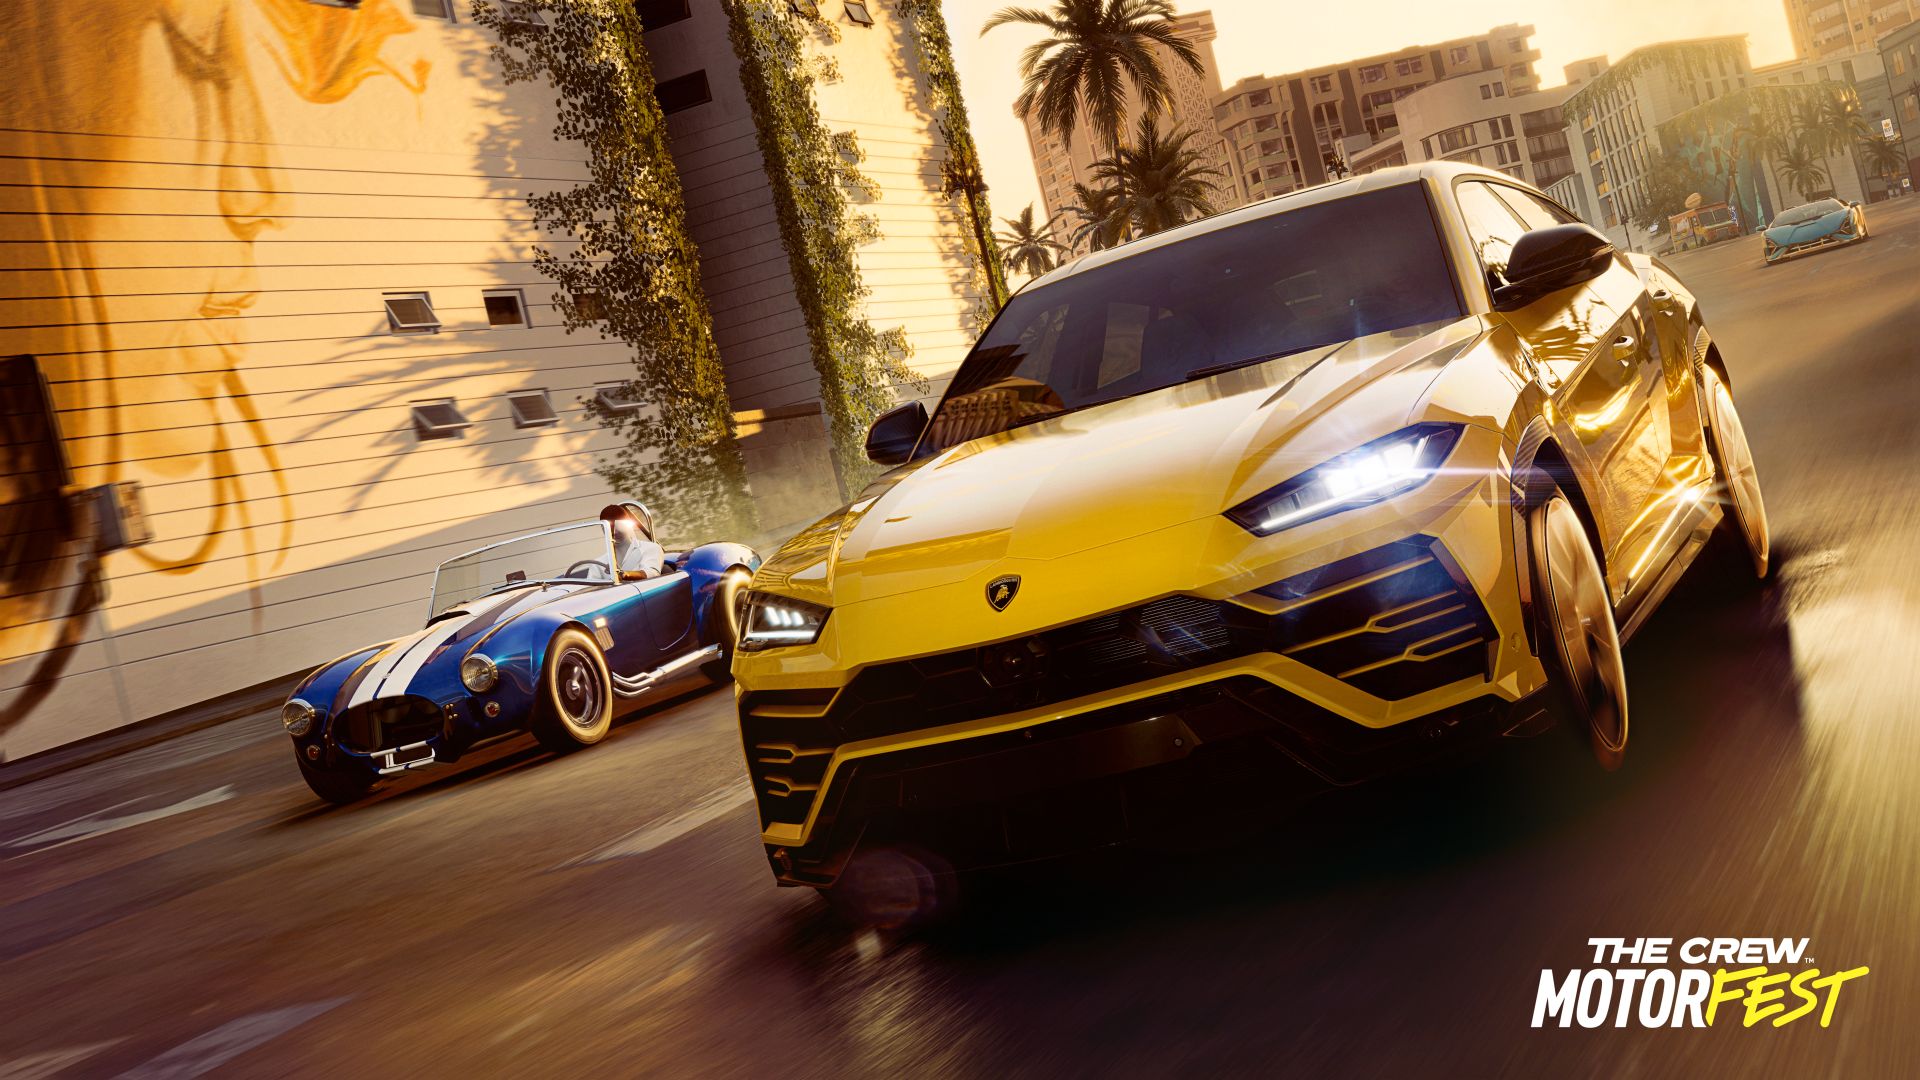 The Crew Motorfest es anunciado para 2023 en Xbox, PlayStation y PC